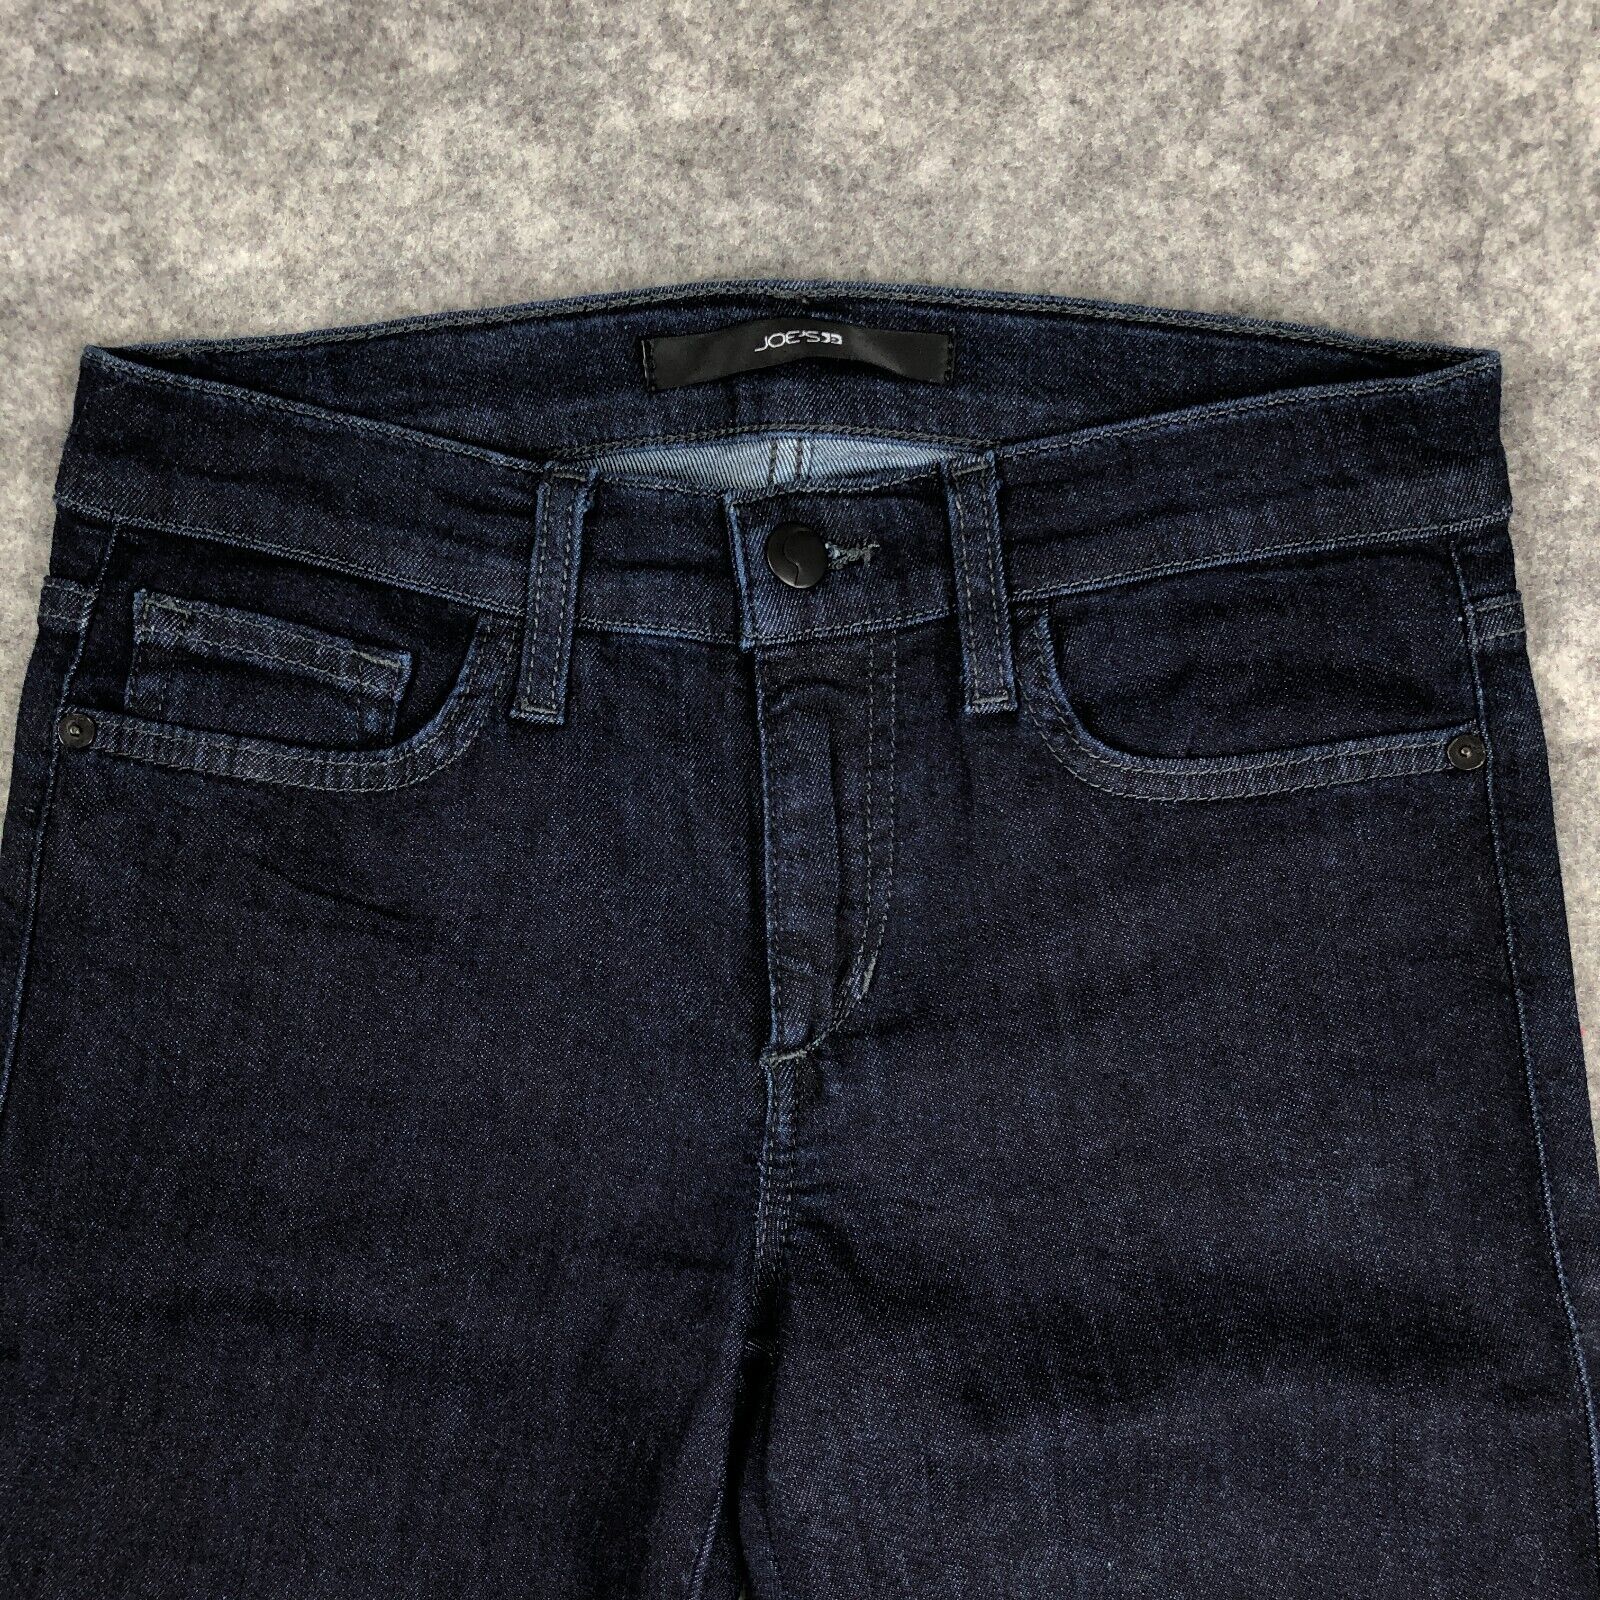 Joes Jeans 28 Straight Leg Low Rise KAREN Dark Wa… - image 6